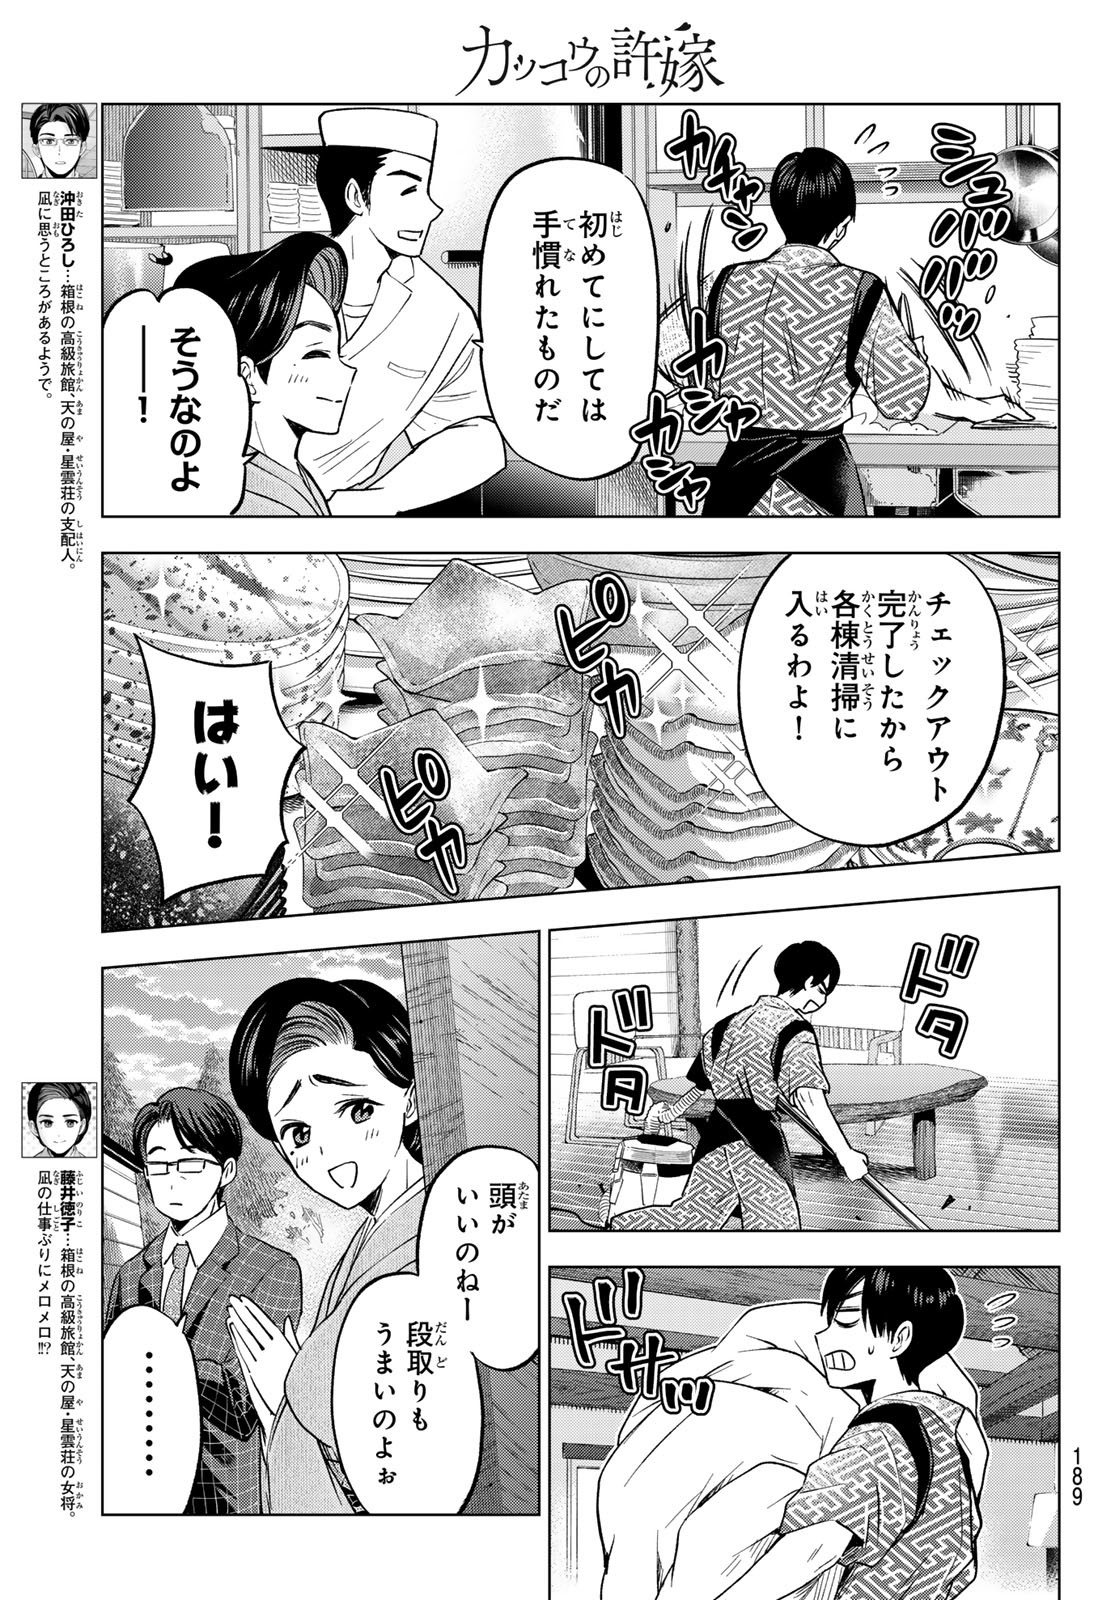 Kakkou no Iinazuke - Chapter 186 - Page 3